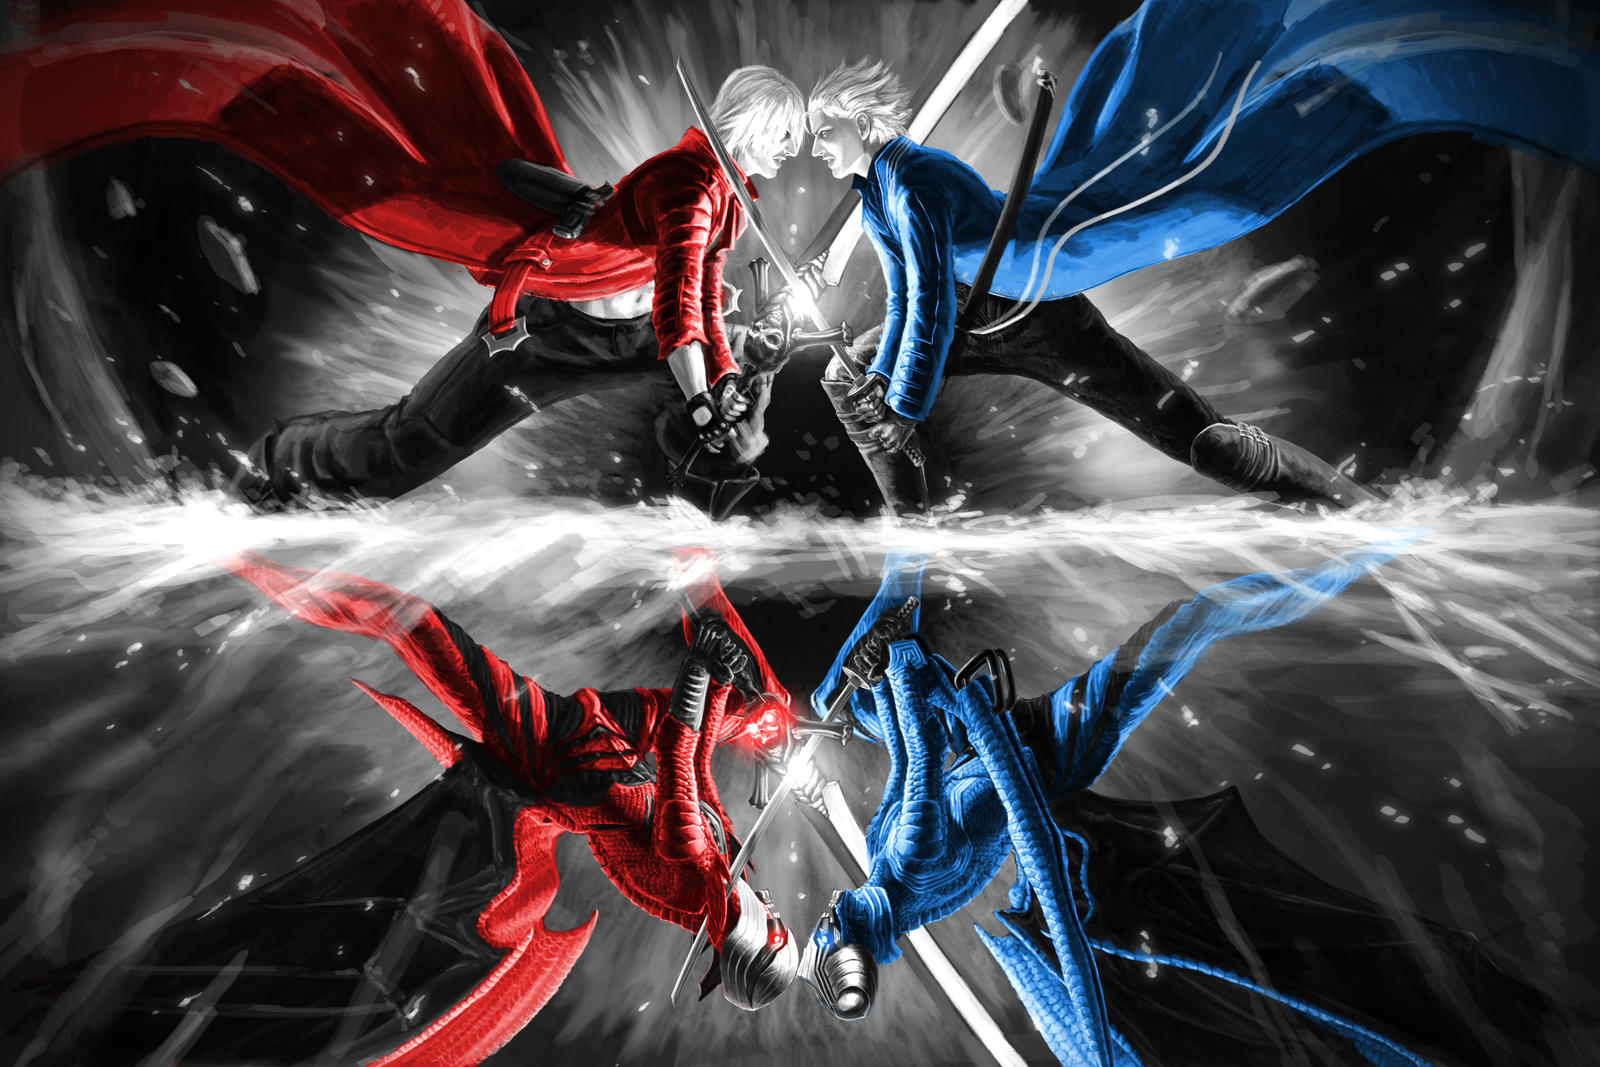 Dante vs Vergil Battle 2 DMC3 REMAKE 